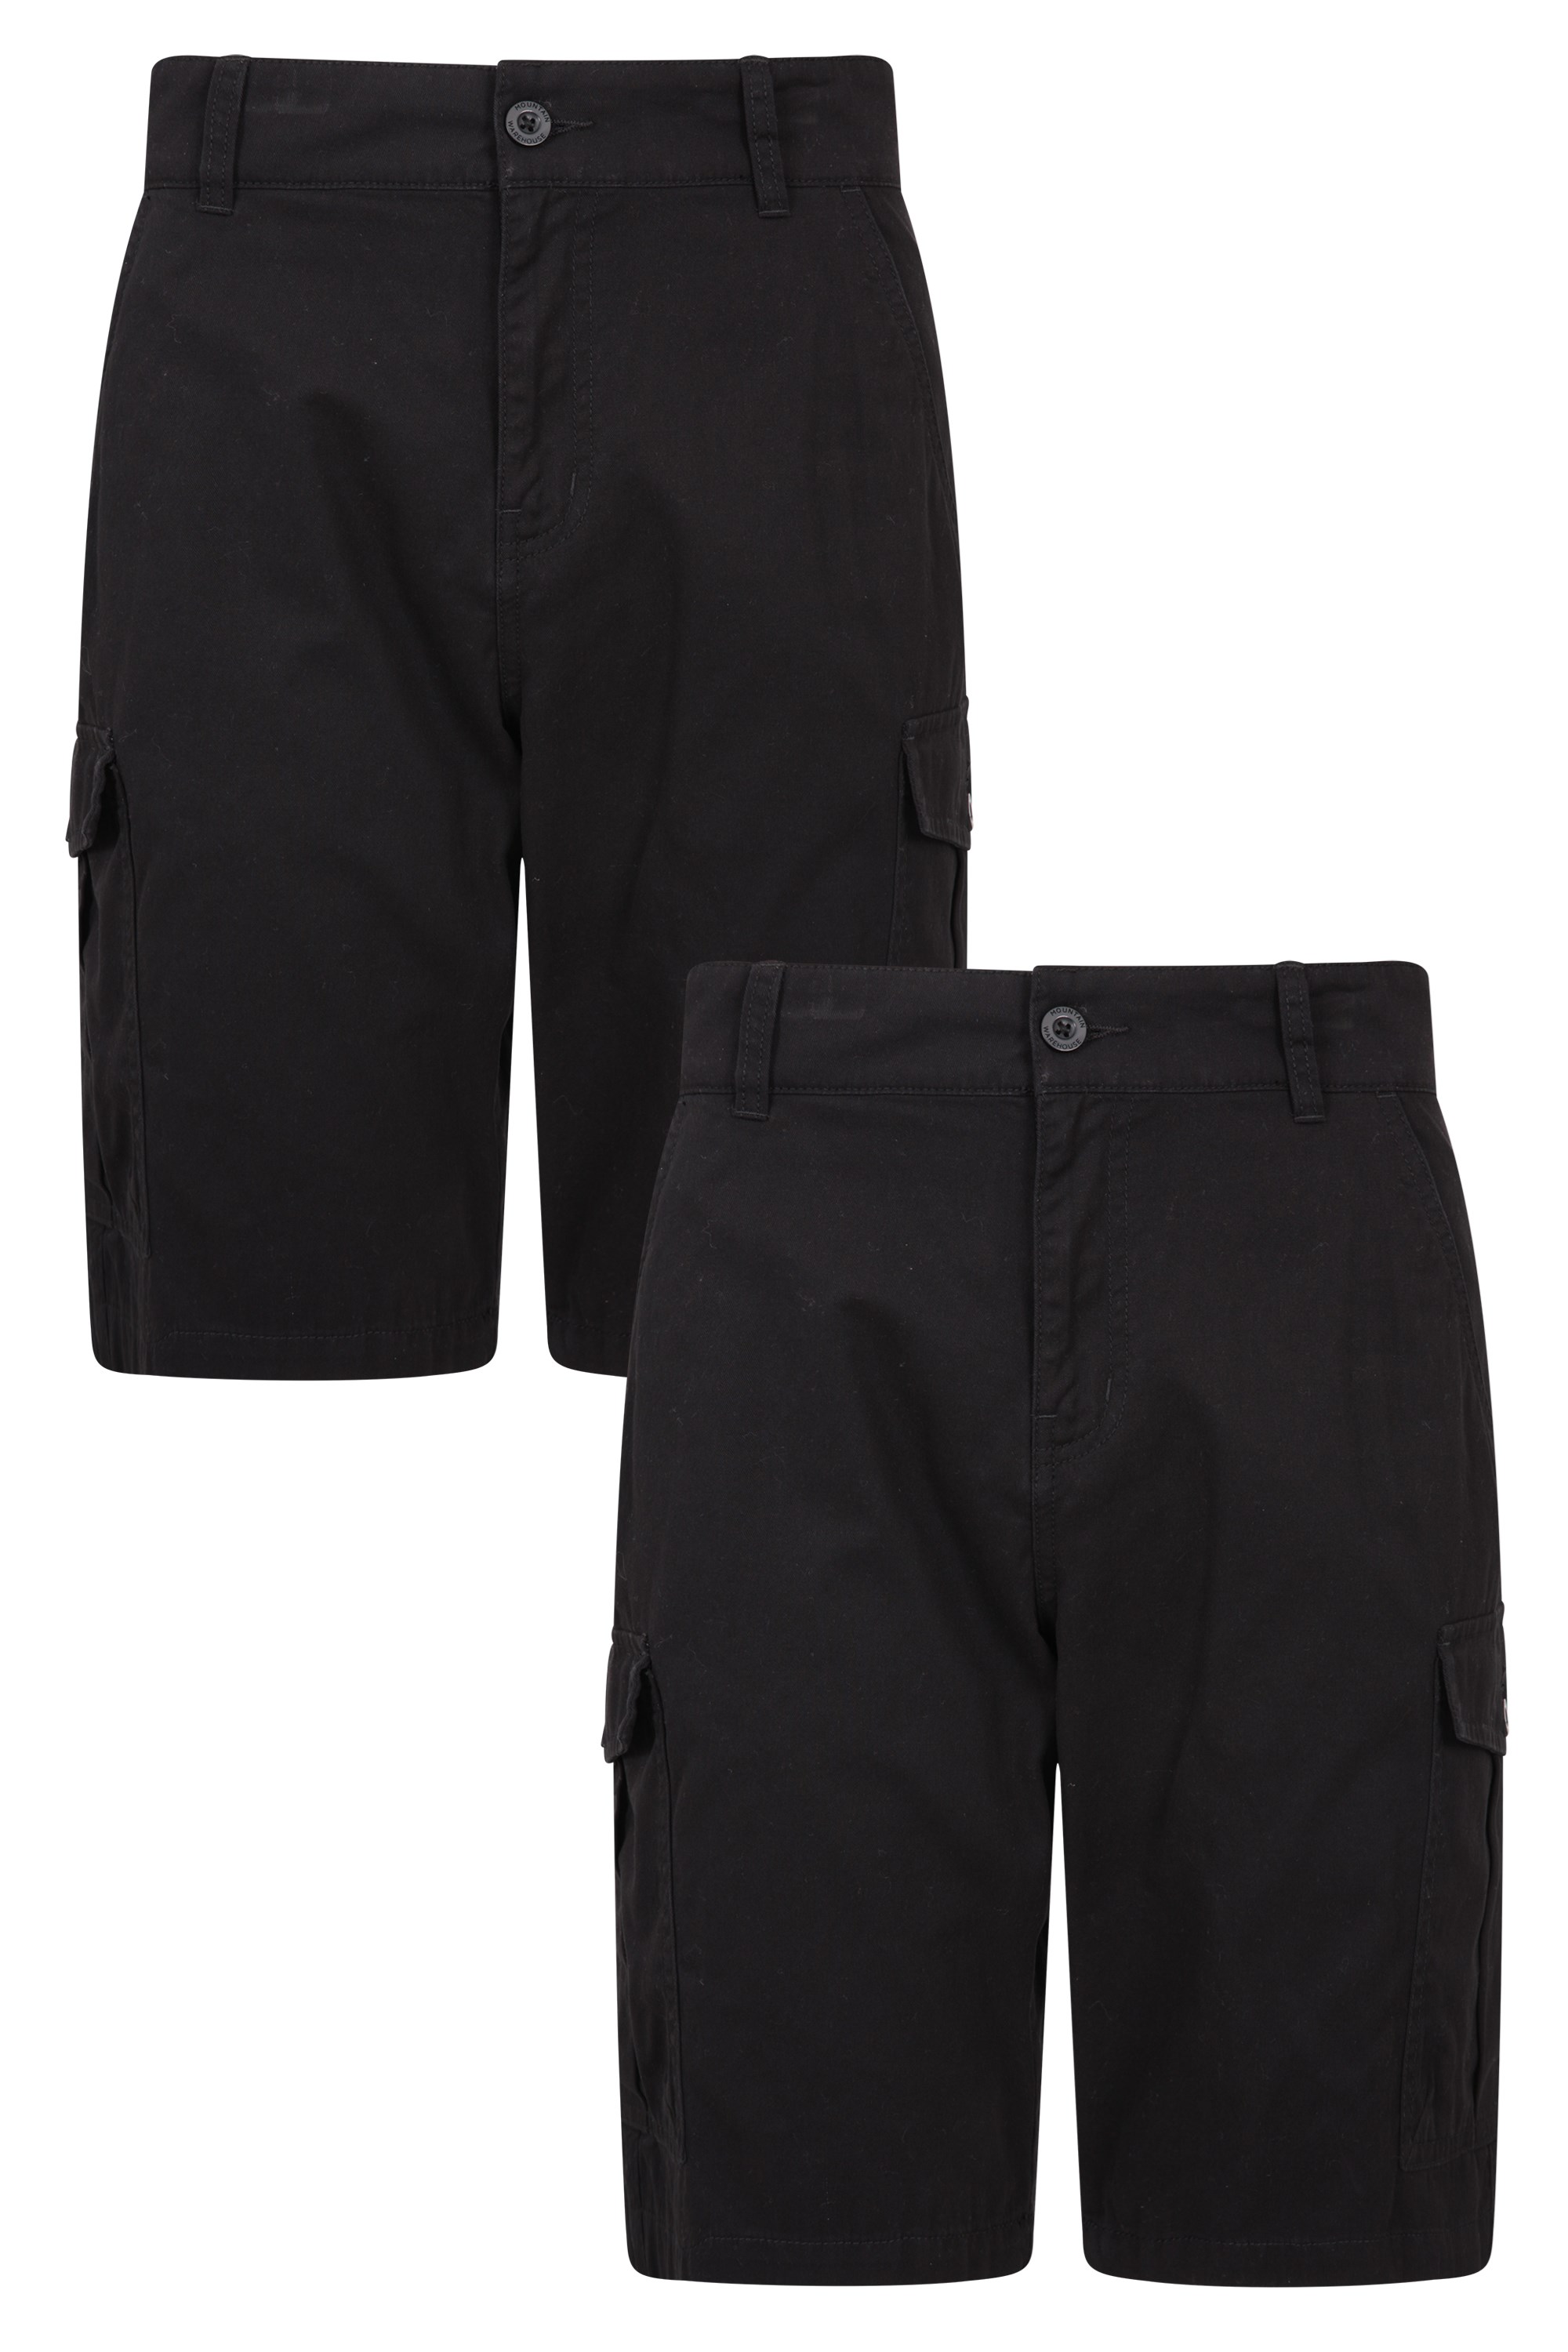 6 Bolsillos para Caminar Pantalón Corto Tipo Cargo Resistente en Sarga de algodón 100% Mountain Warehouse Pantalón Corto Lakeside para Hombre Correr